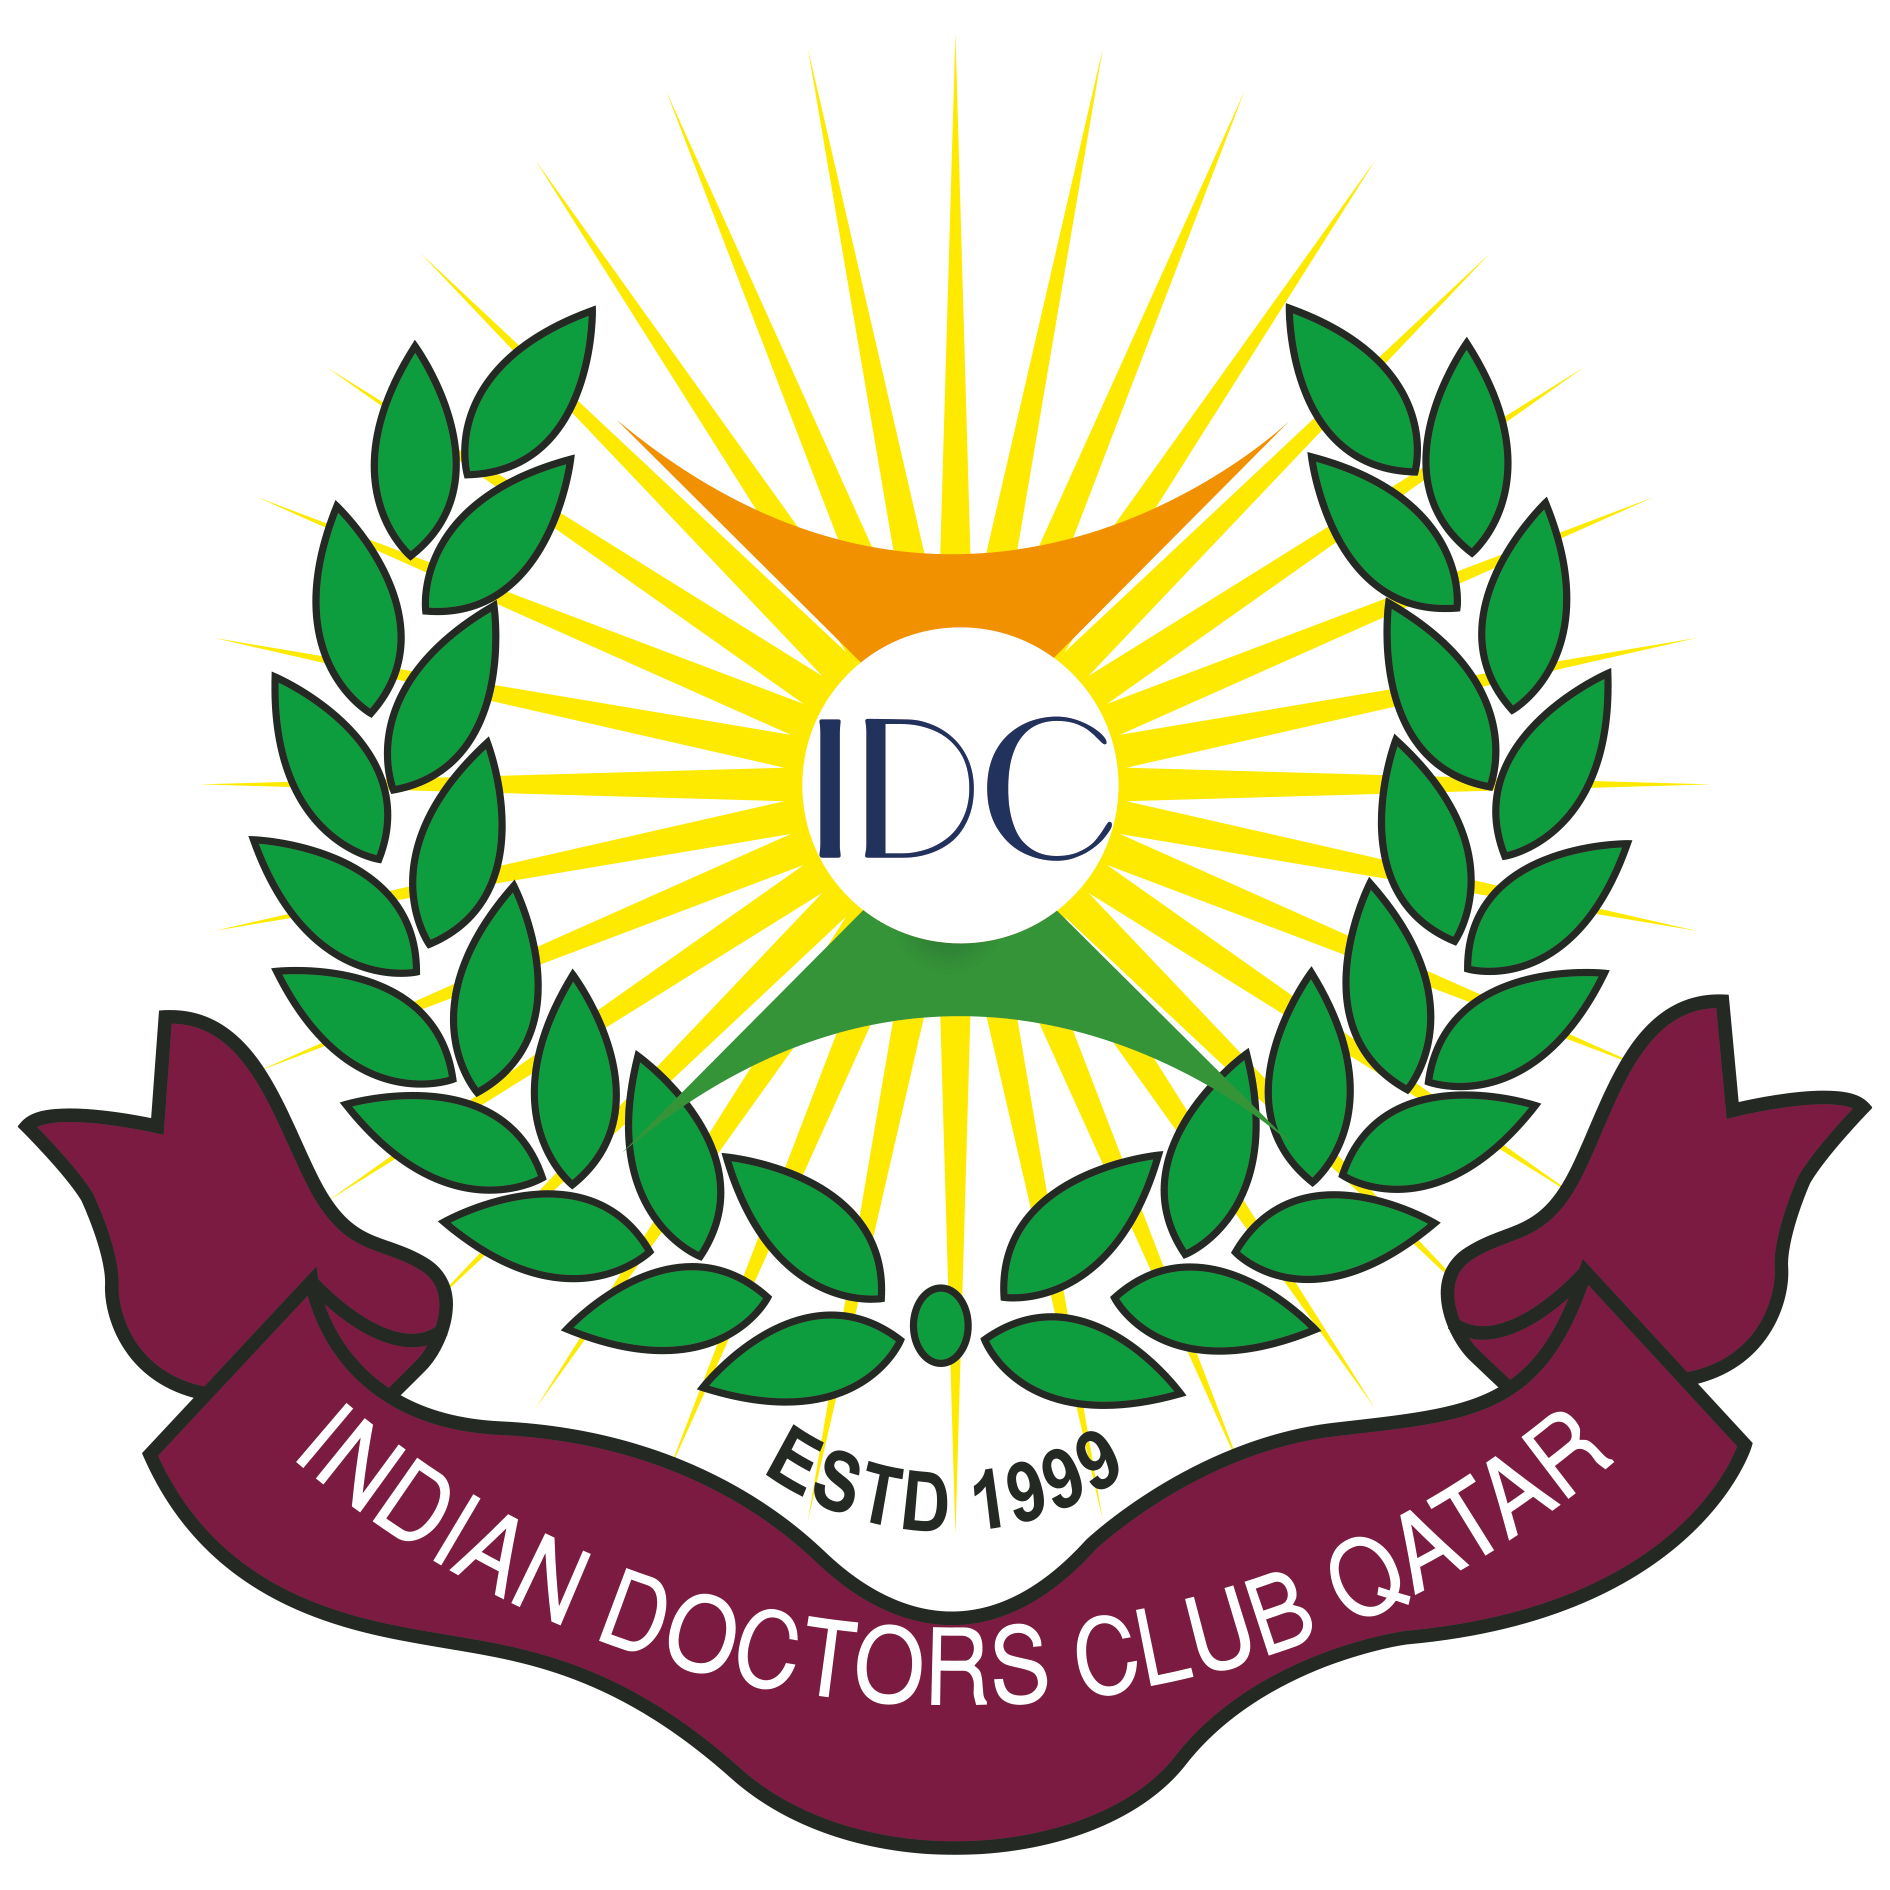 About IDC Qatar